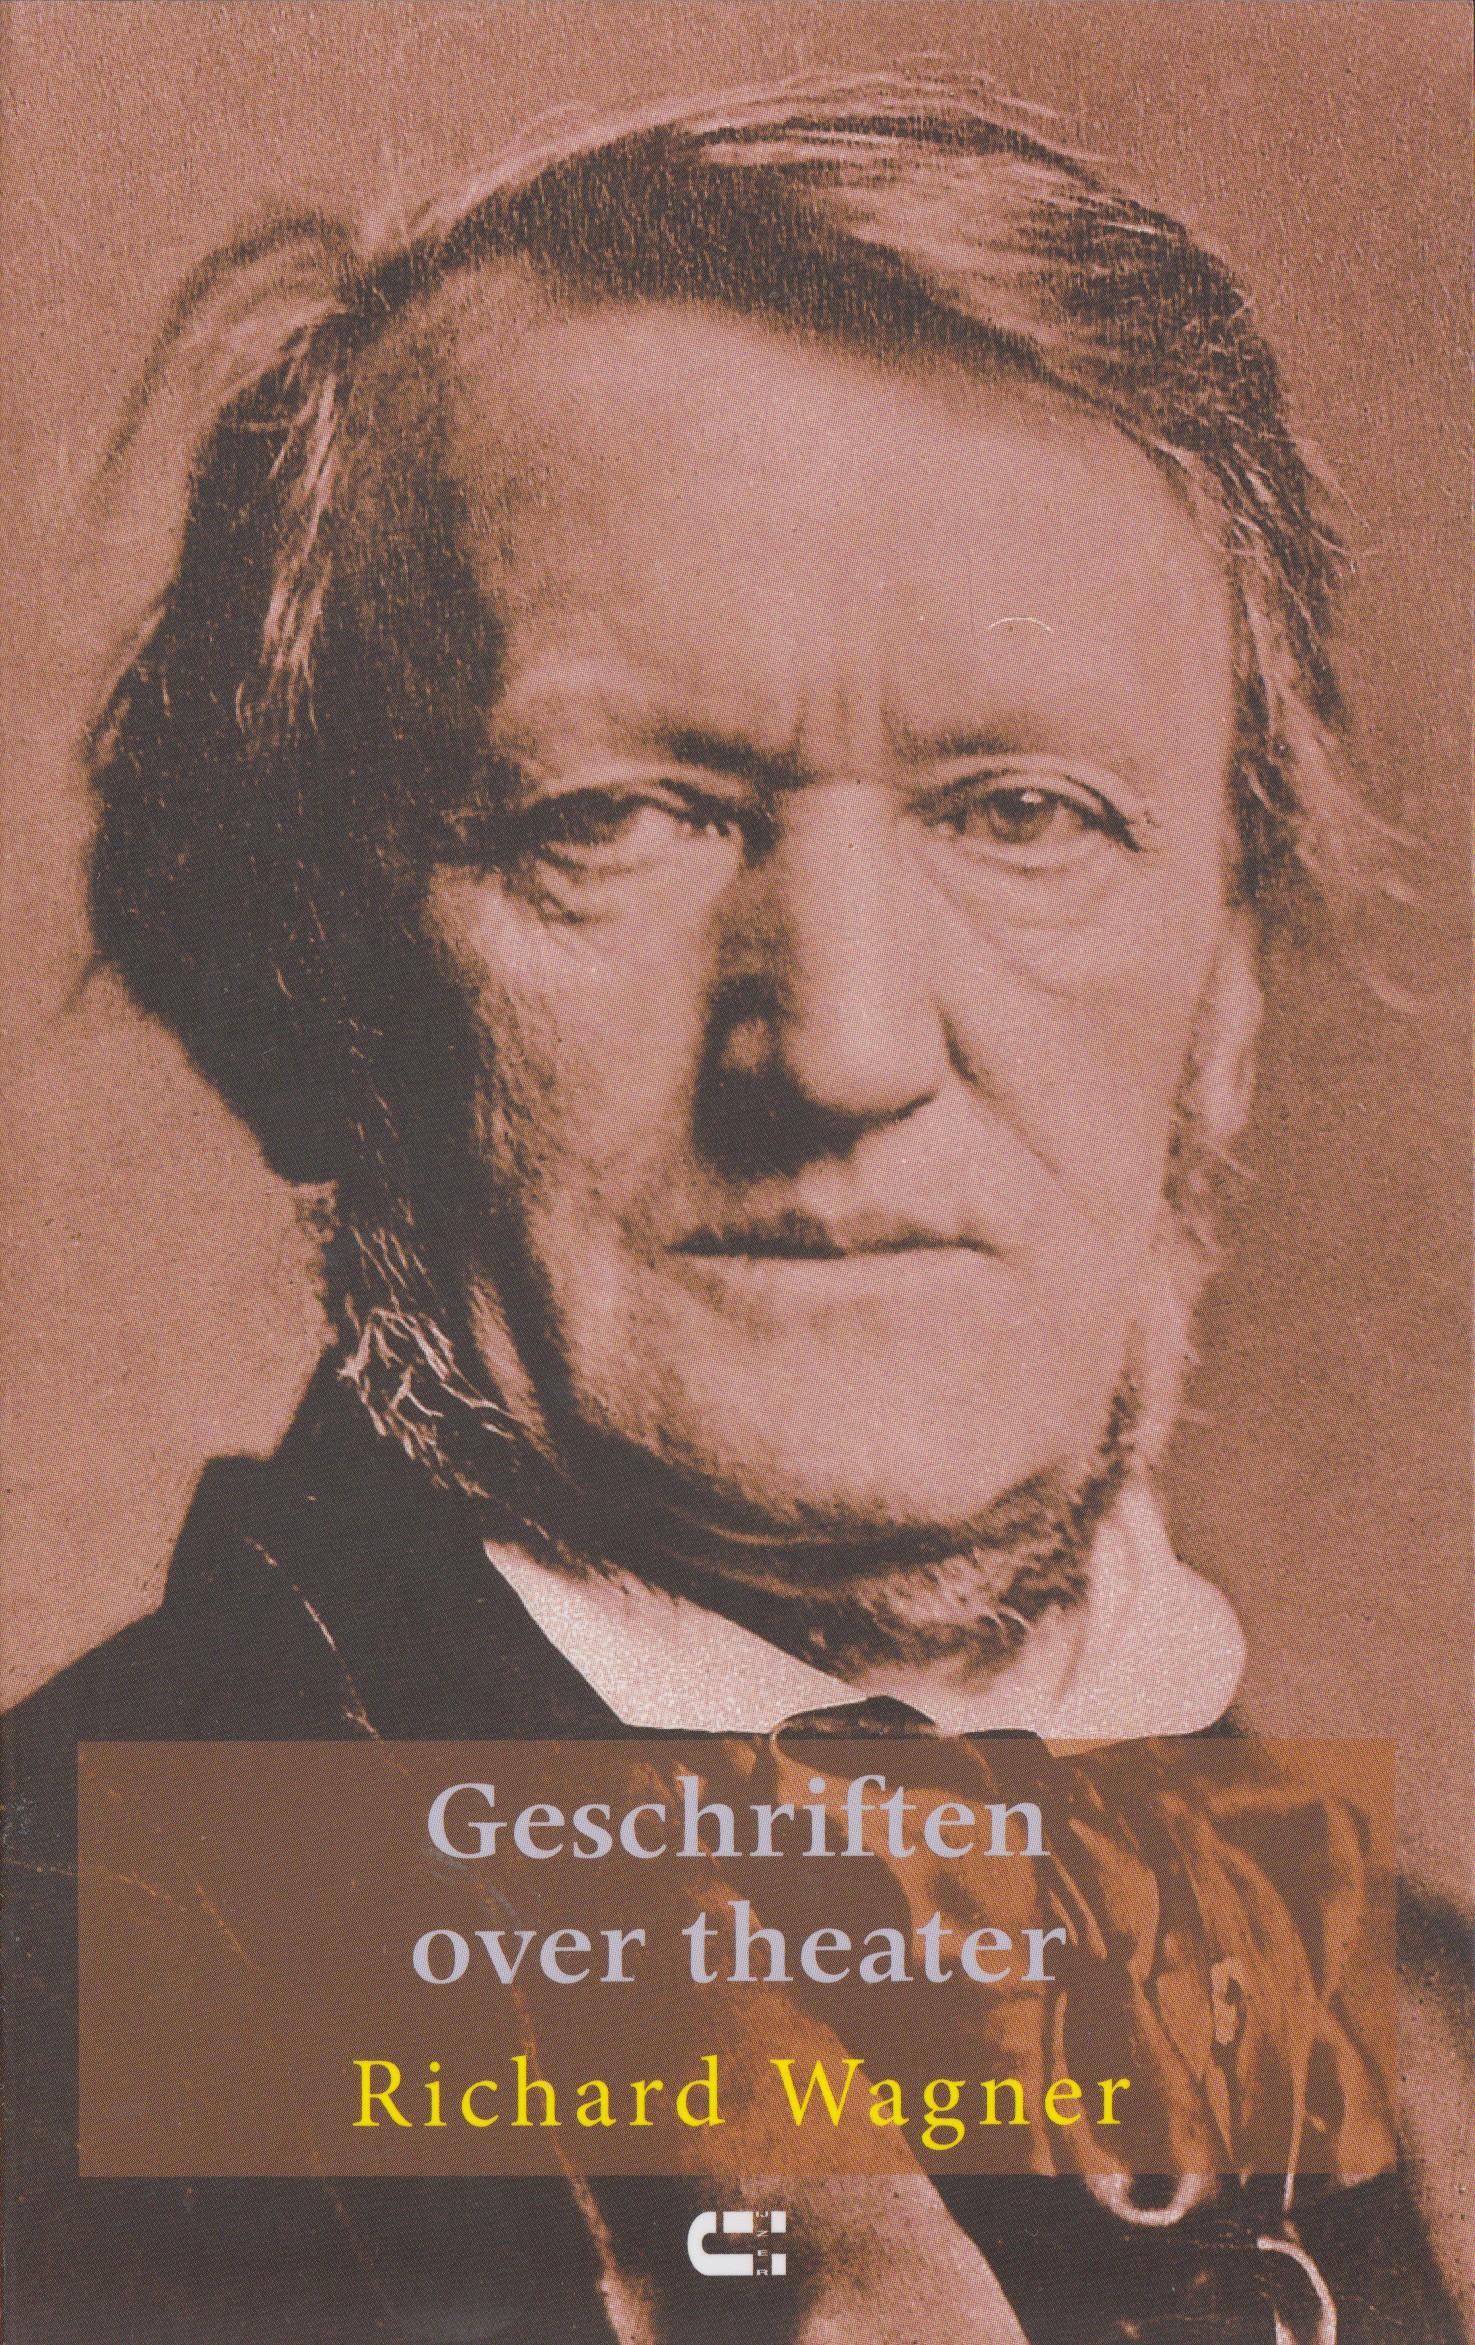 Wagner, Richard - Geschriften over theater.